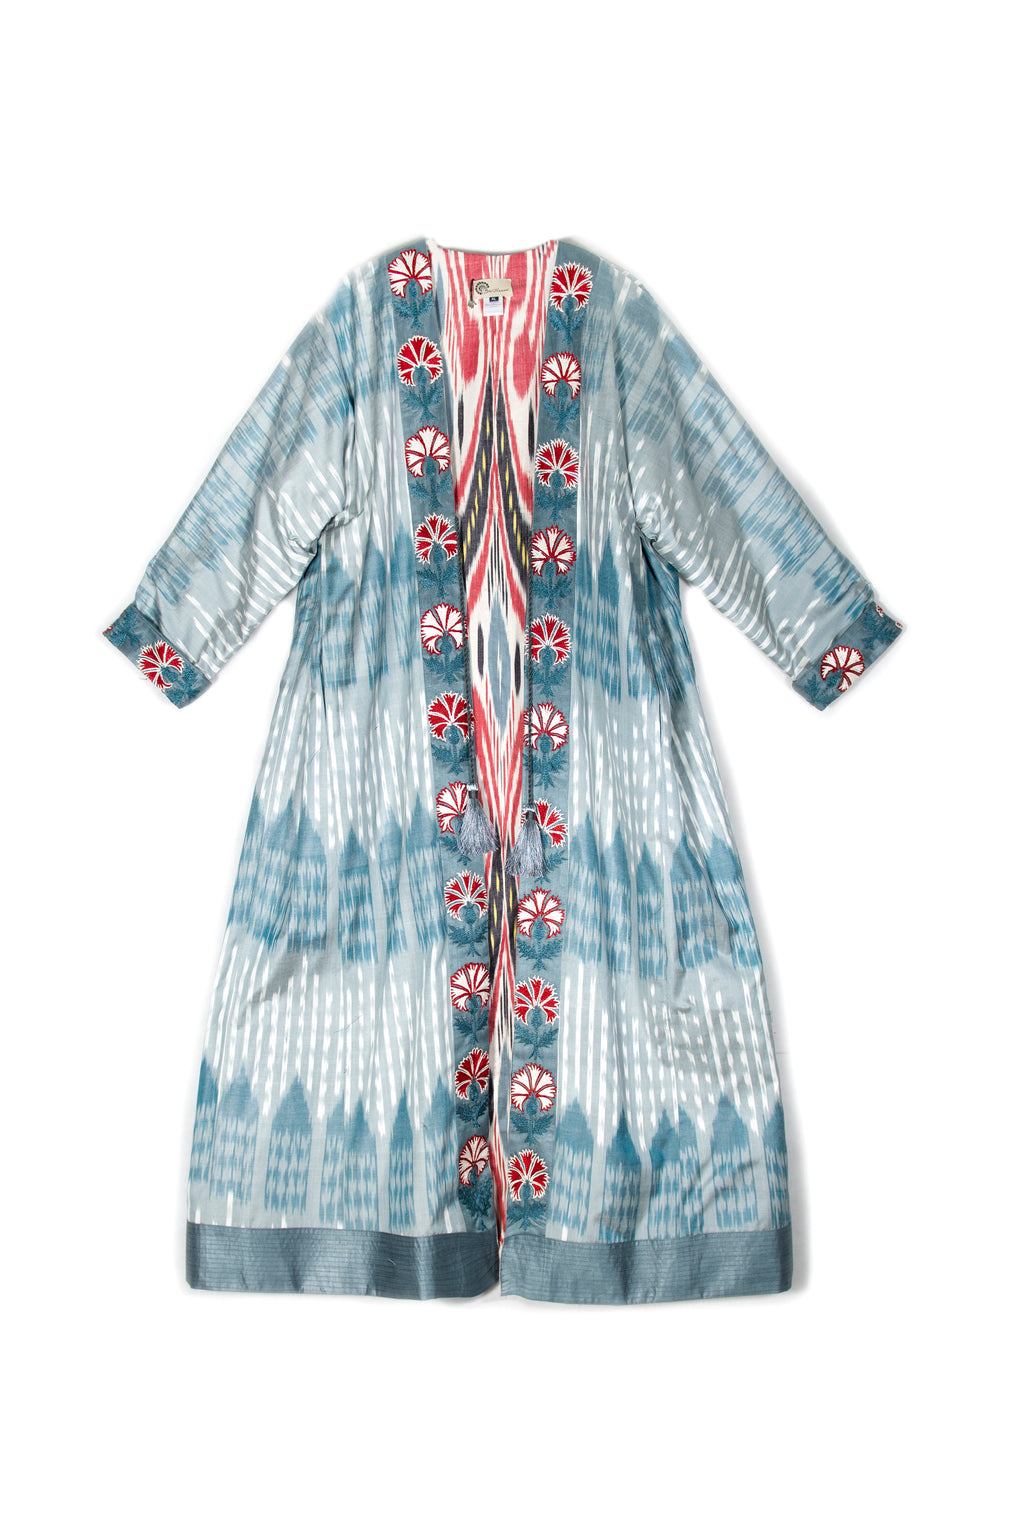 Suzani Ikat Robe, Image 